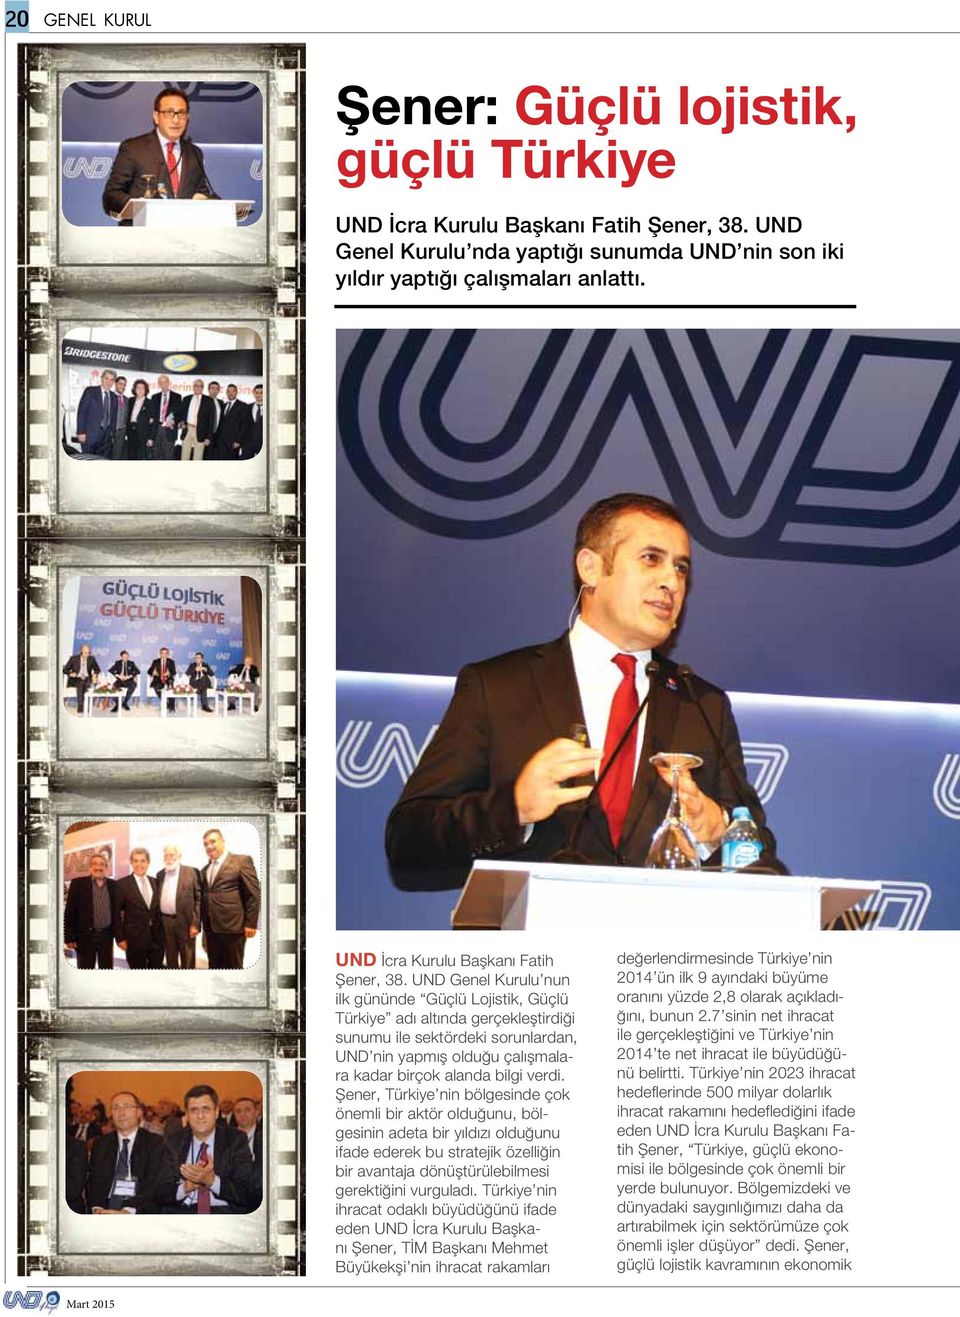 UND Genel Kurulu nun ilk gününde Güçlü Lojistik, Güçlü Türkiye adı altında gerçekleştirdiği sunumu ile sektördeki sorunlardan, UND nin yapmış olduğu çalışmalara kadar birçok alanda bilgi verdi.